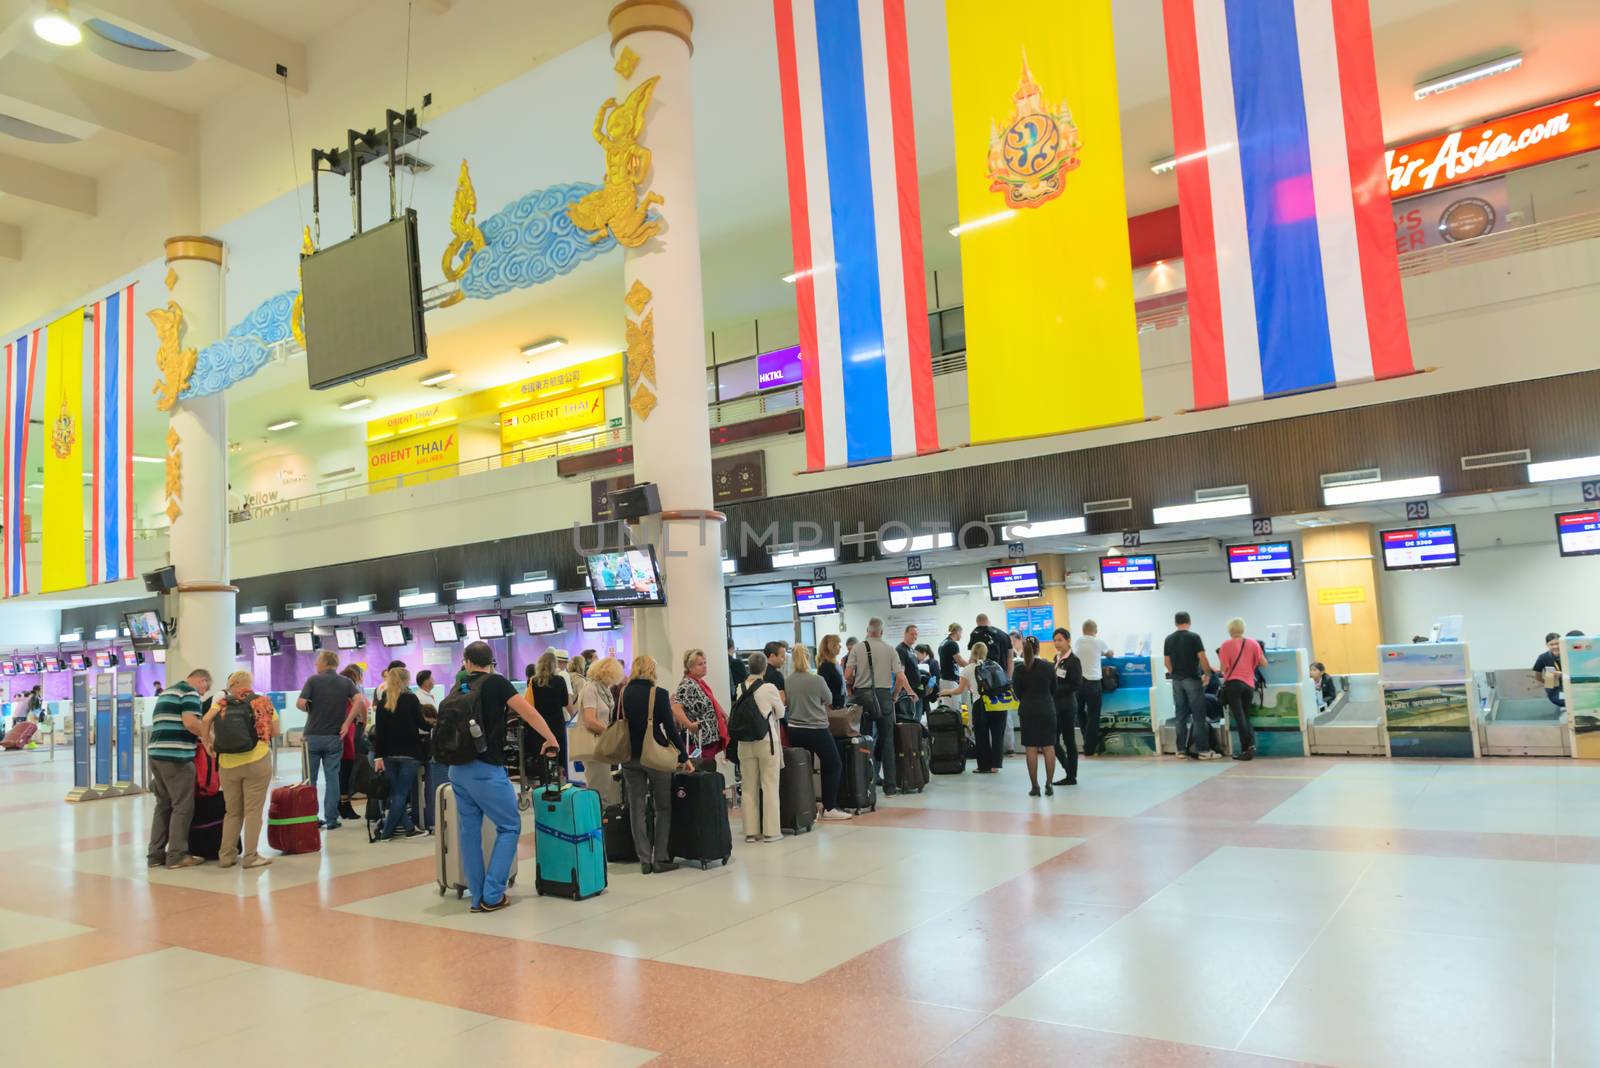  Passenger queue near check-in desks in airport by iryna_rasko